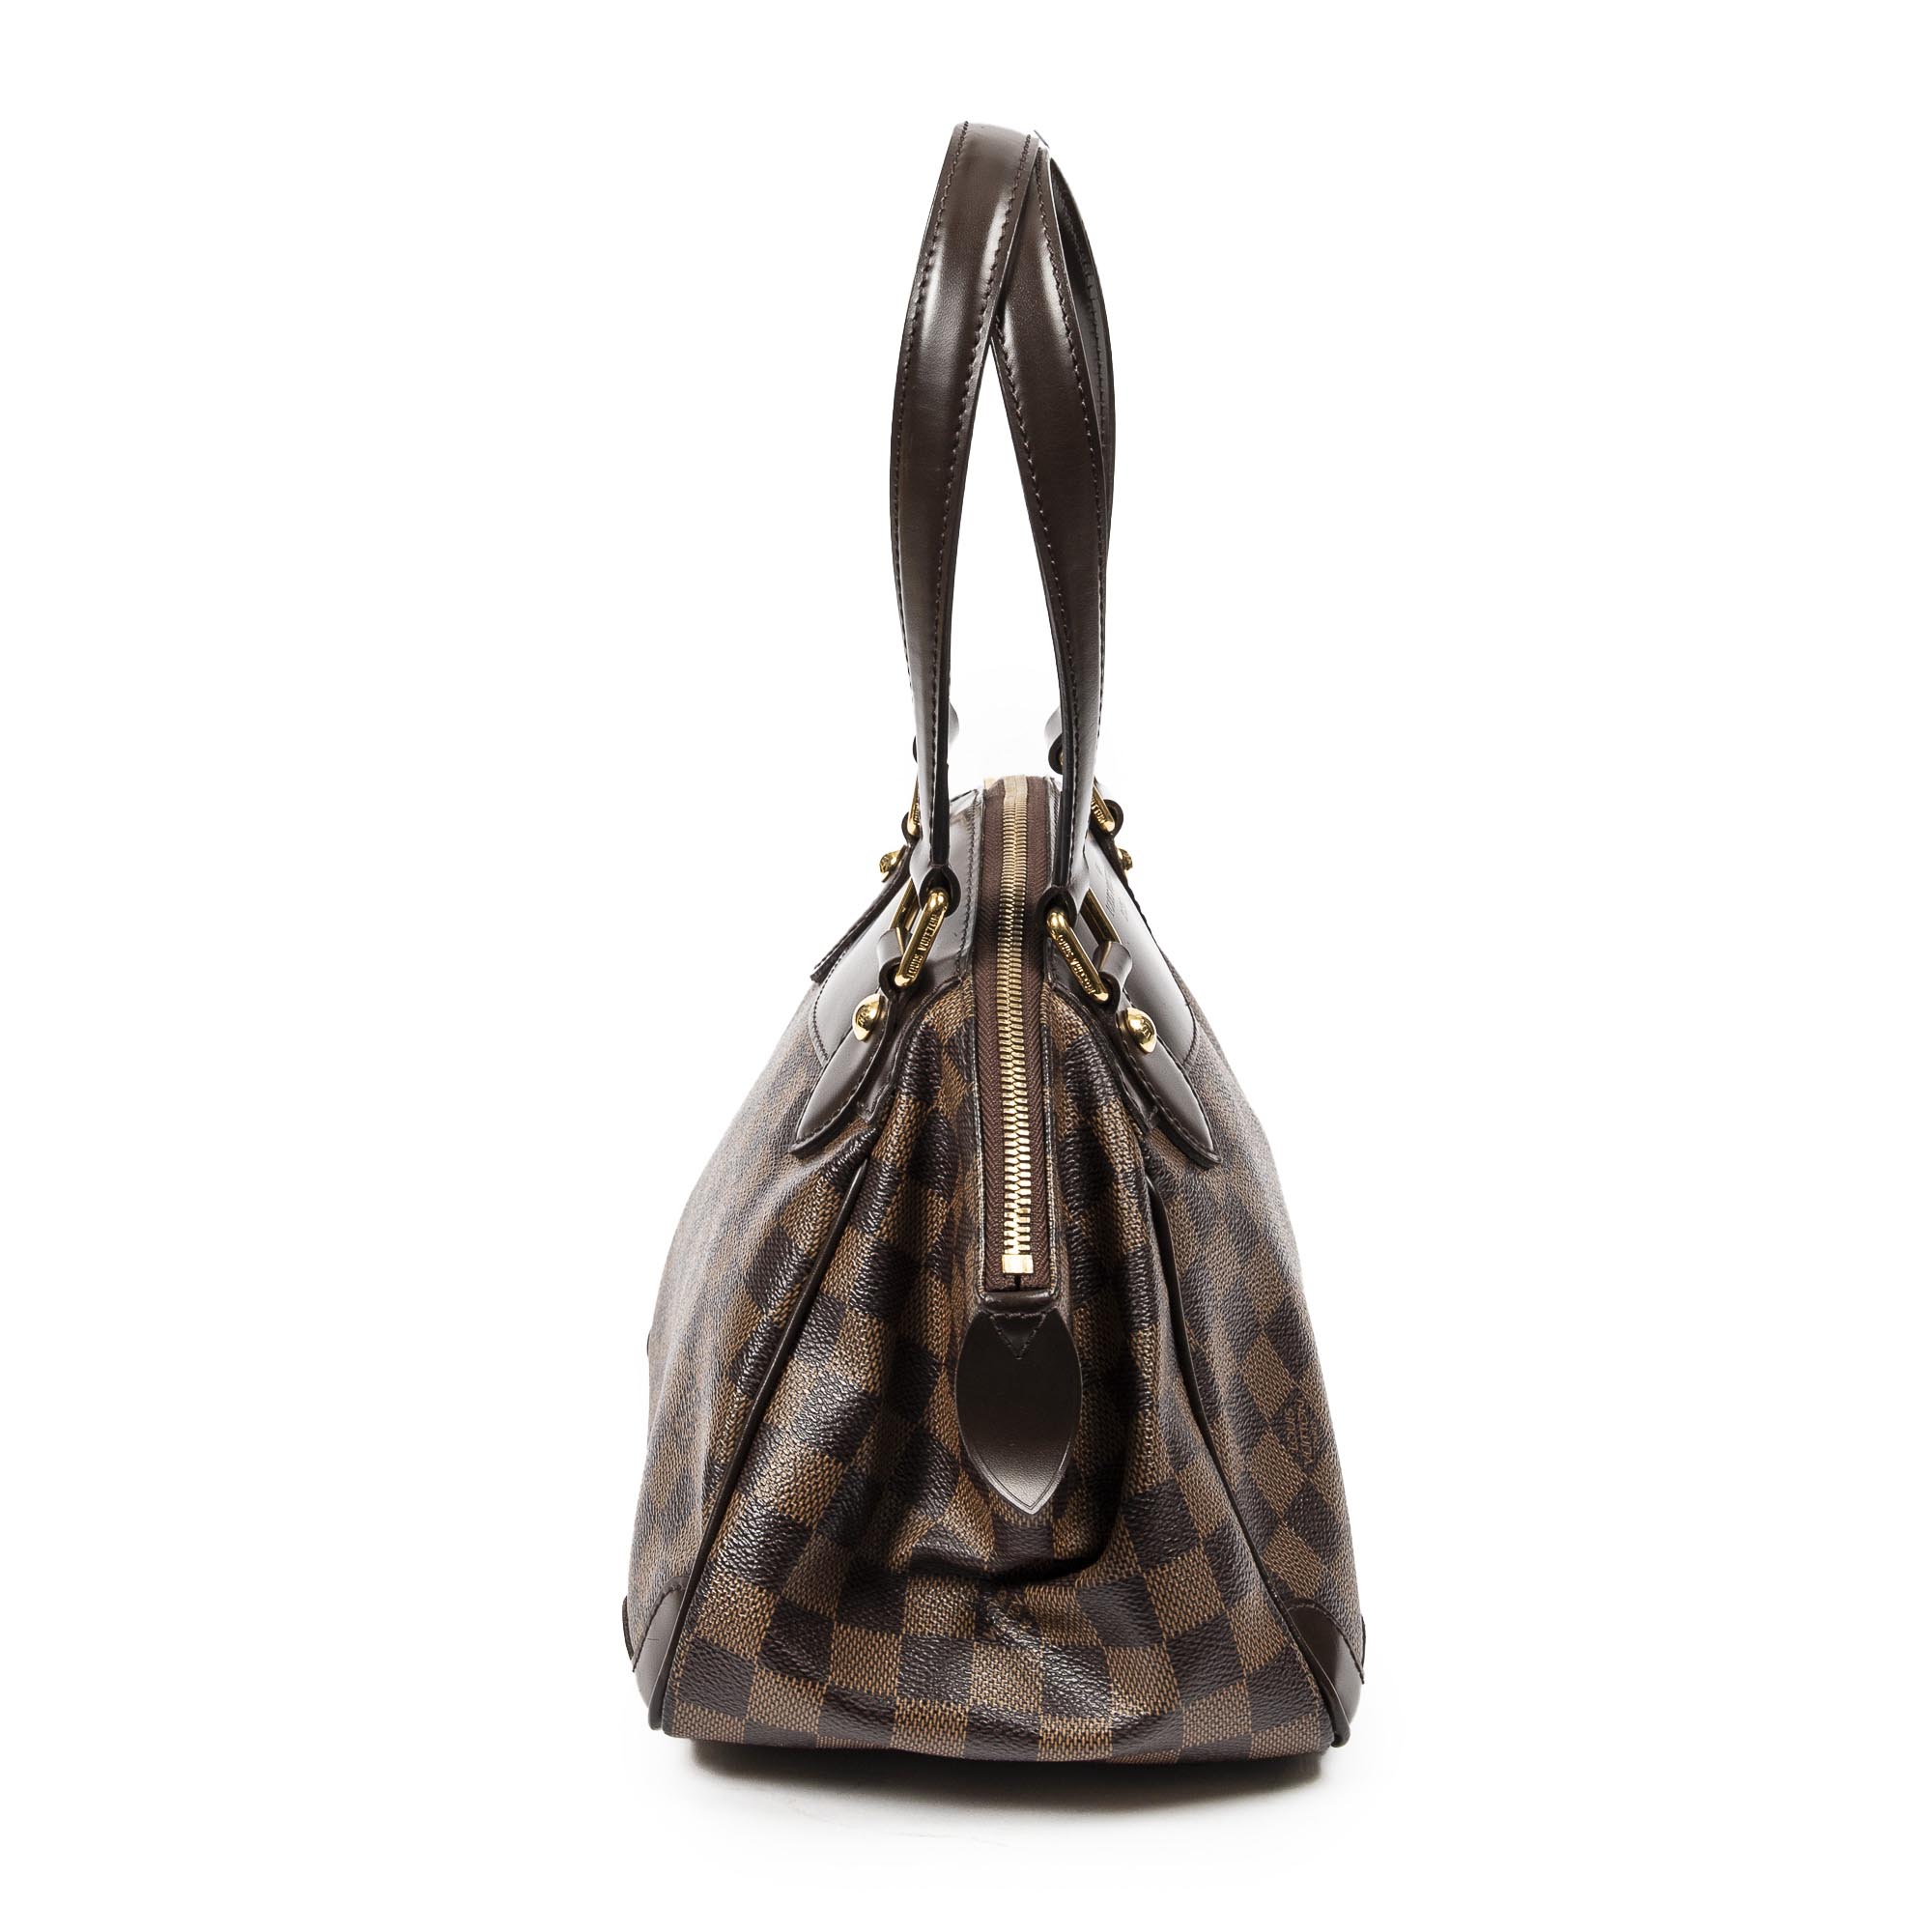 Louis Vuitton Verona Pm Damier Shoulder Bag. Excellent Condition